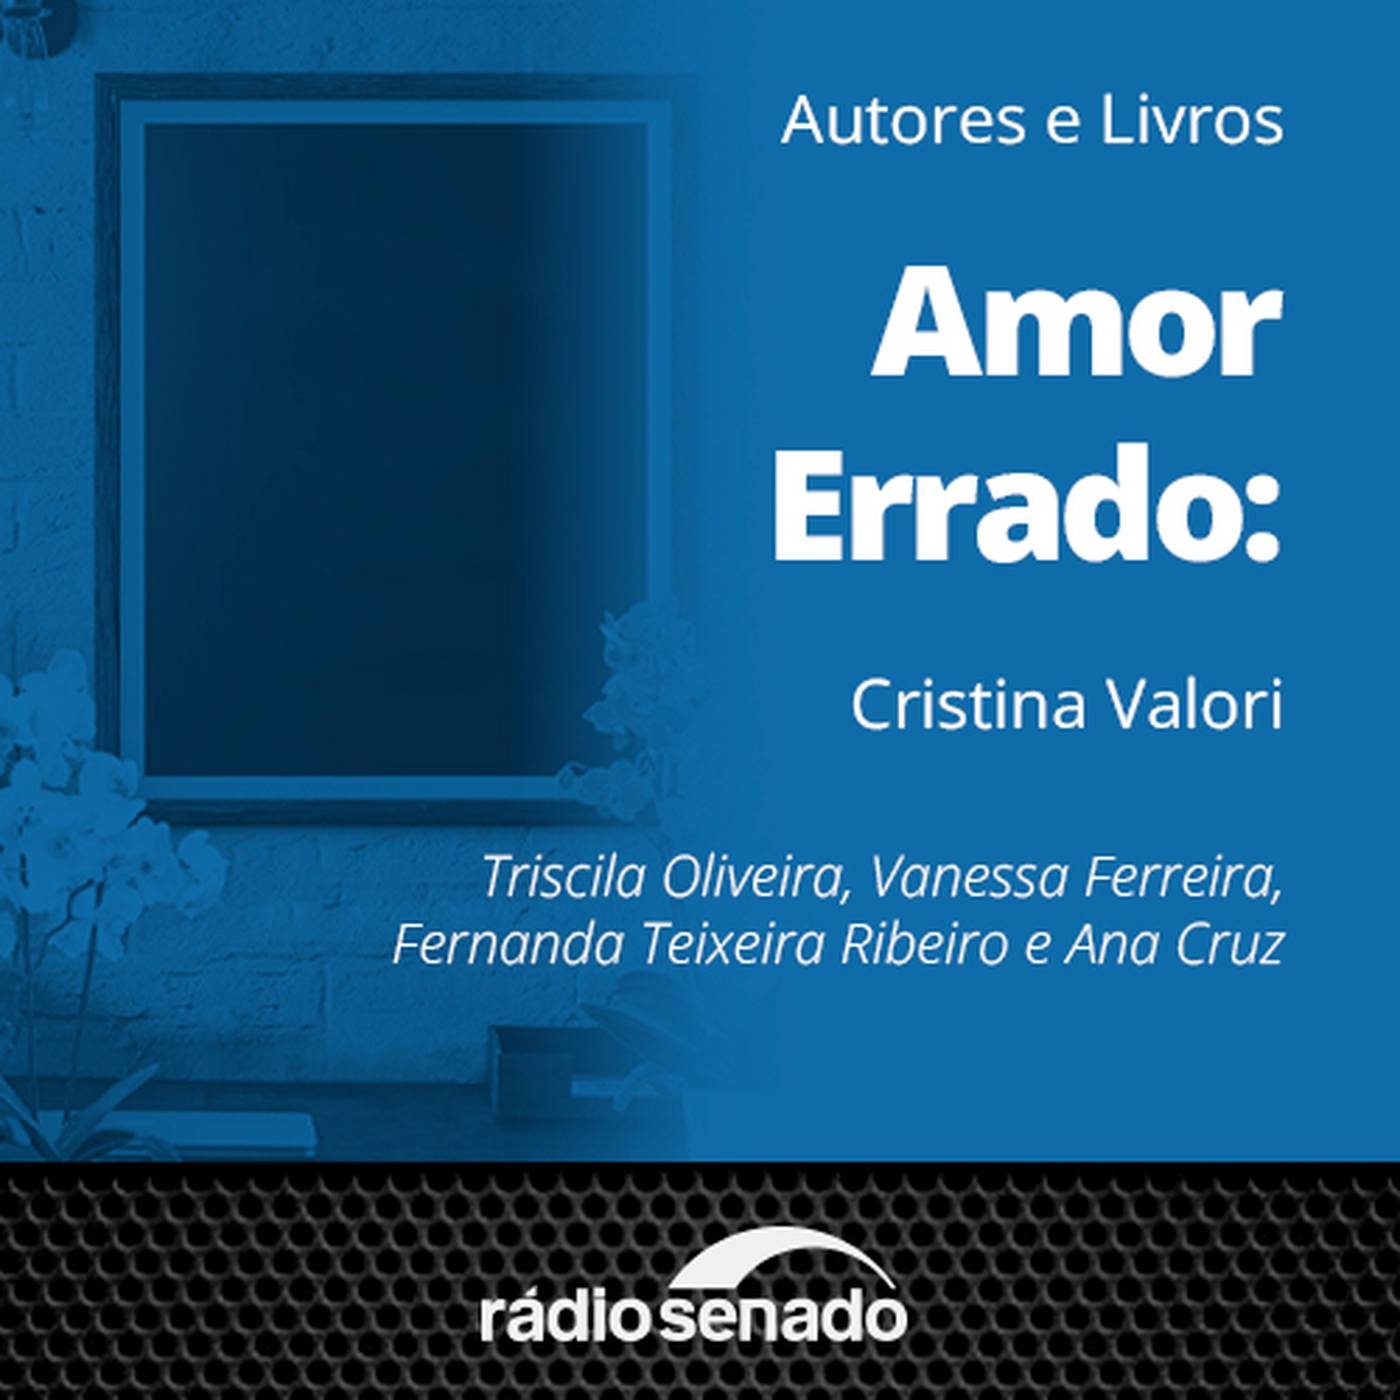 Cristina Valori fala sobre “Amor Errado", um romance repleto de dilemas pessoais e familiares